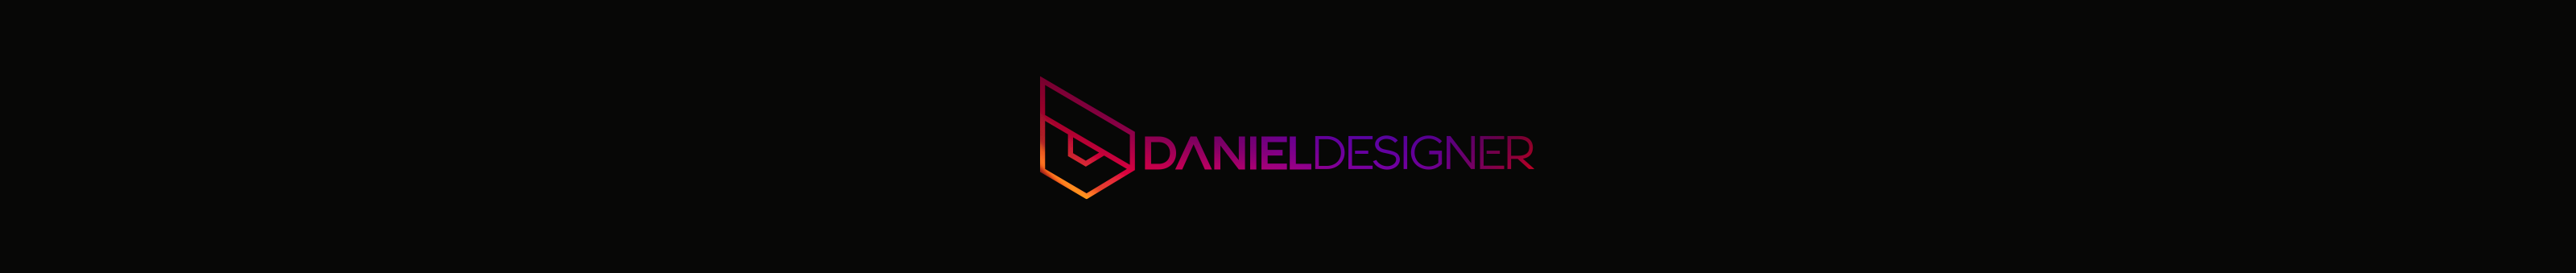 Daniel Lima's profile banner